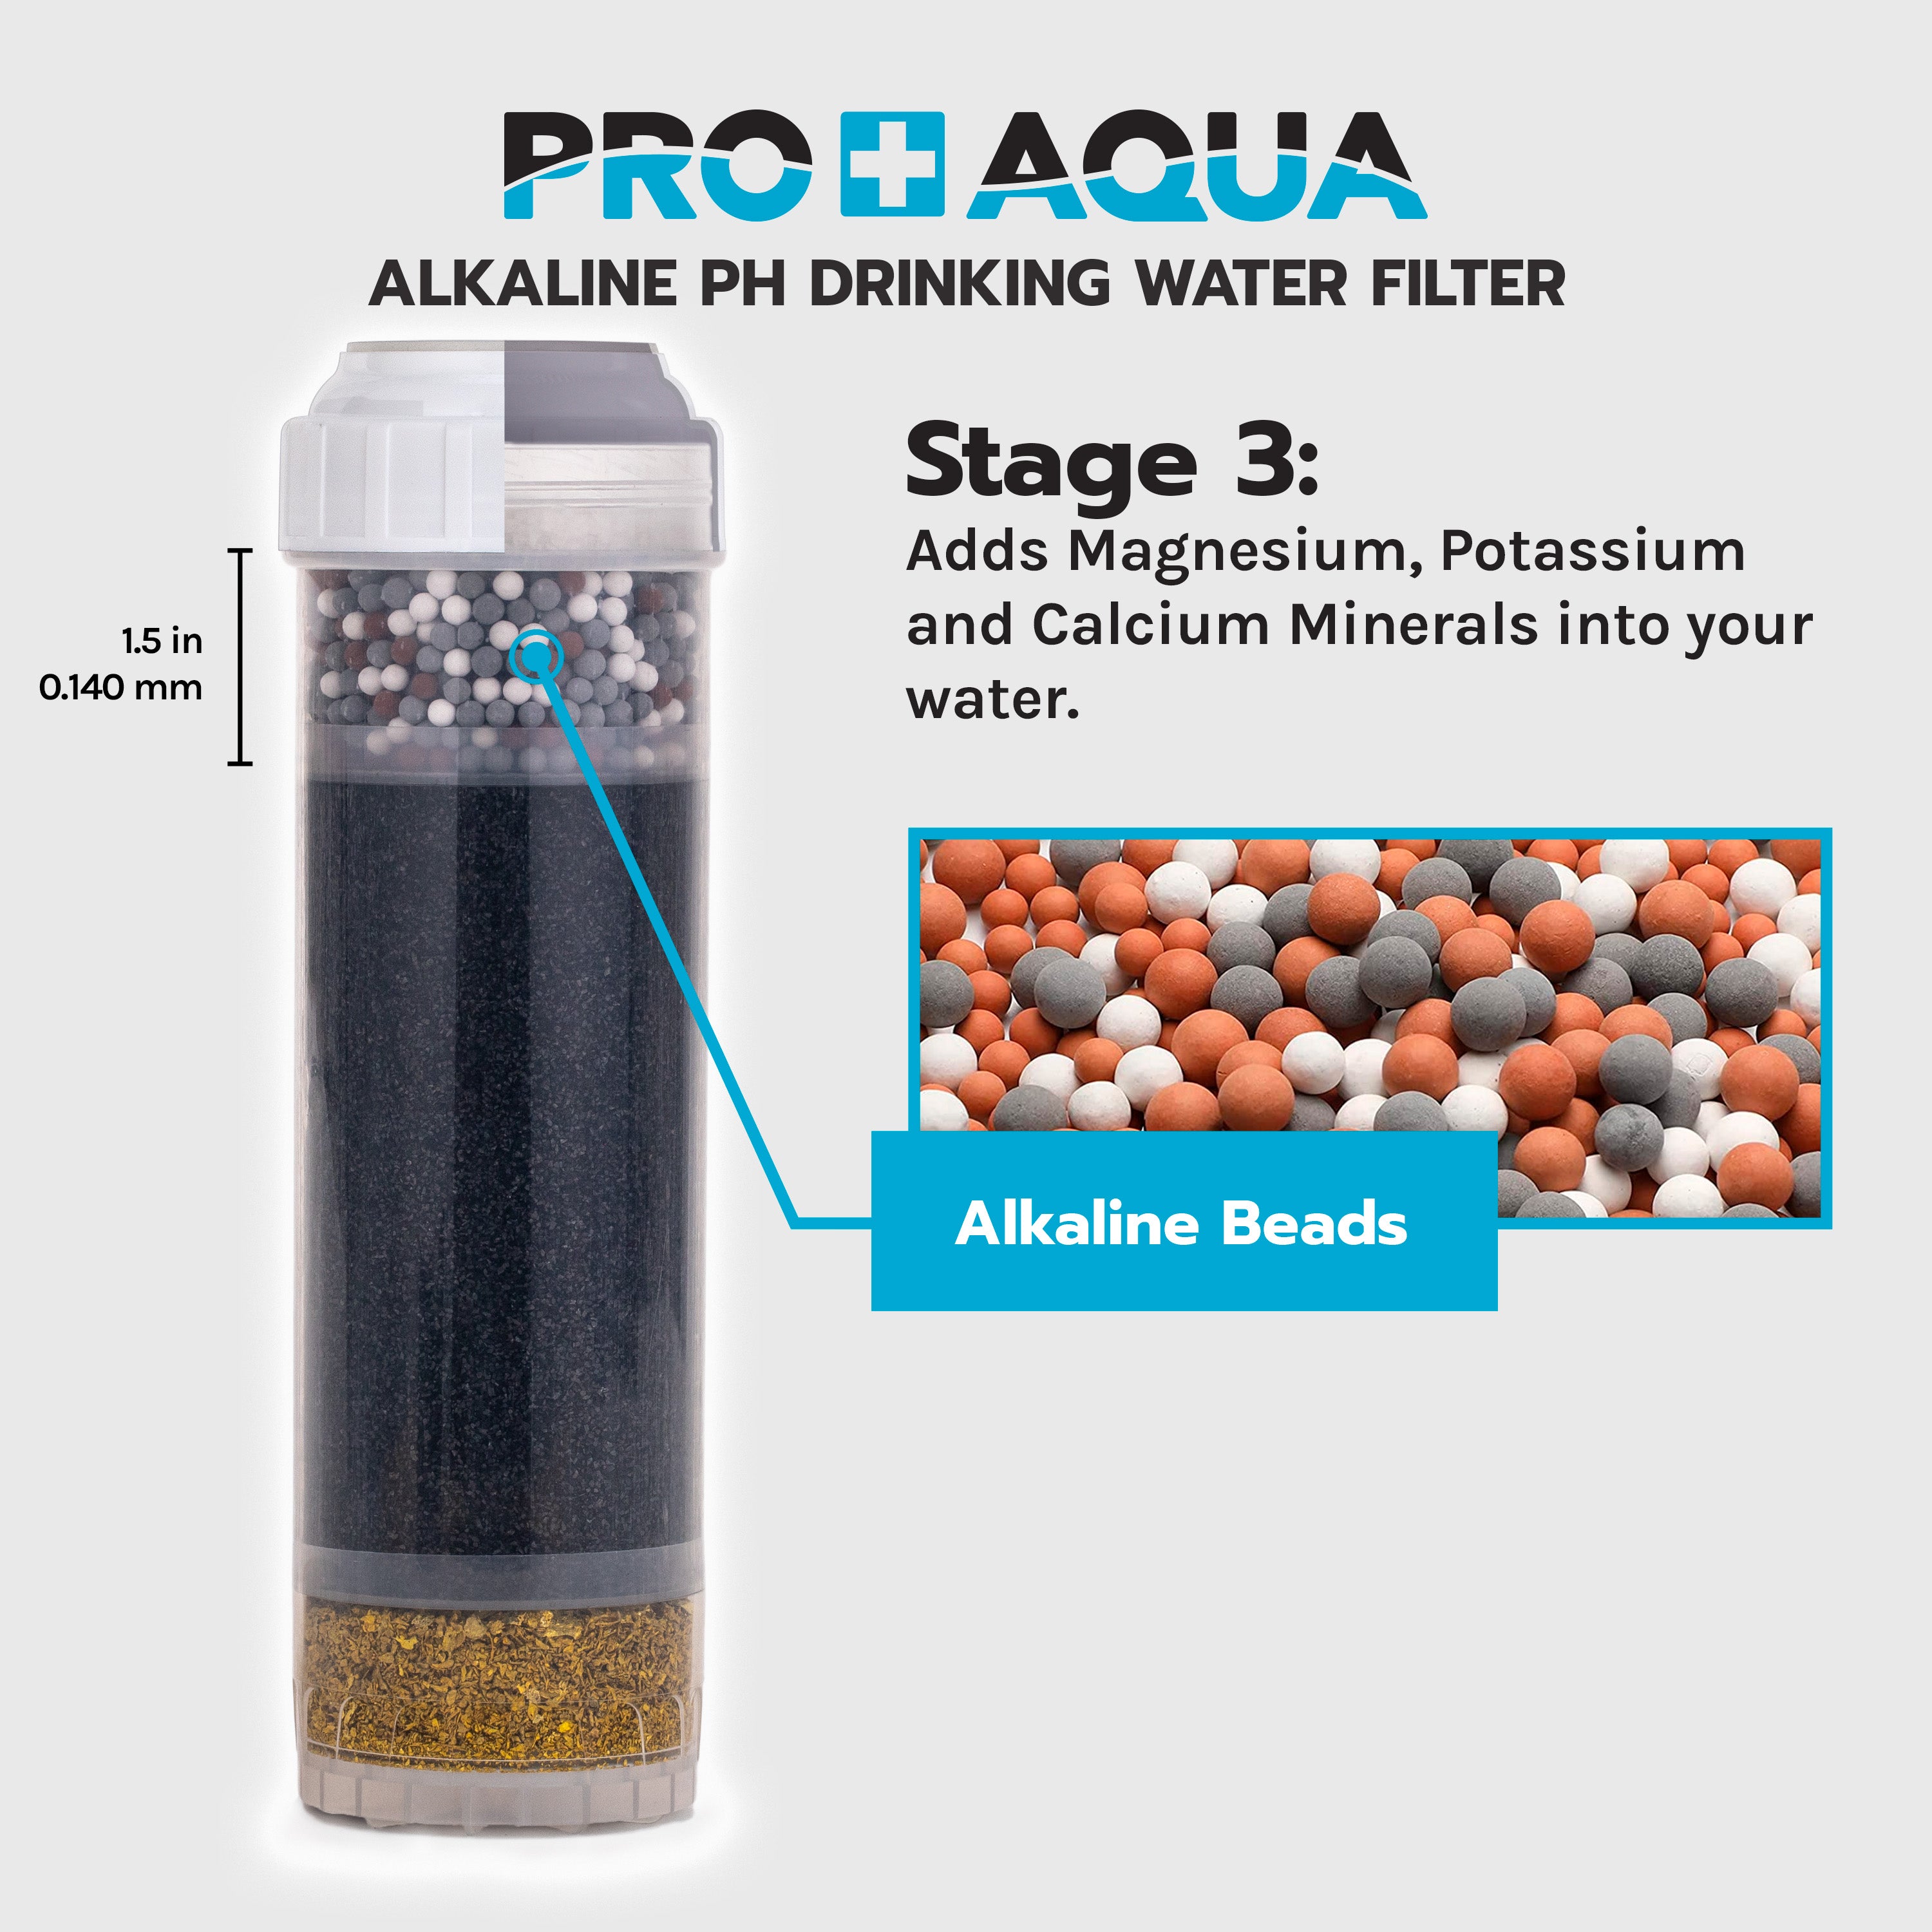 Alkaline PH Drinking Water Filter for Chlorine, Chloramines, Taste, Odor, Heavy Metals